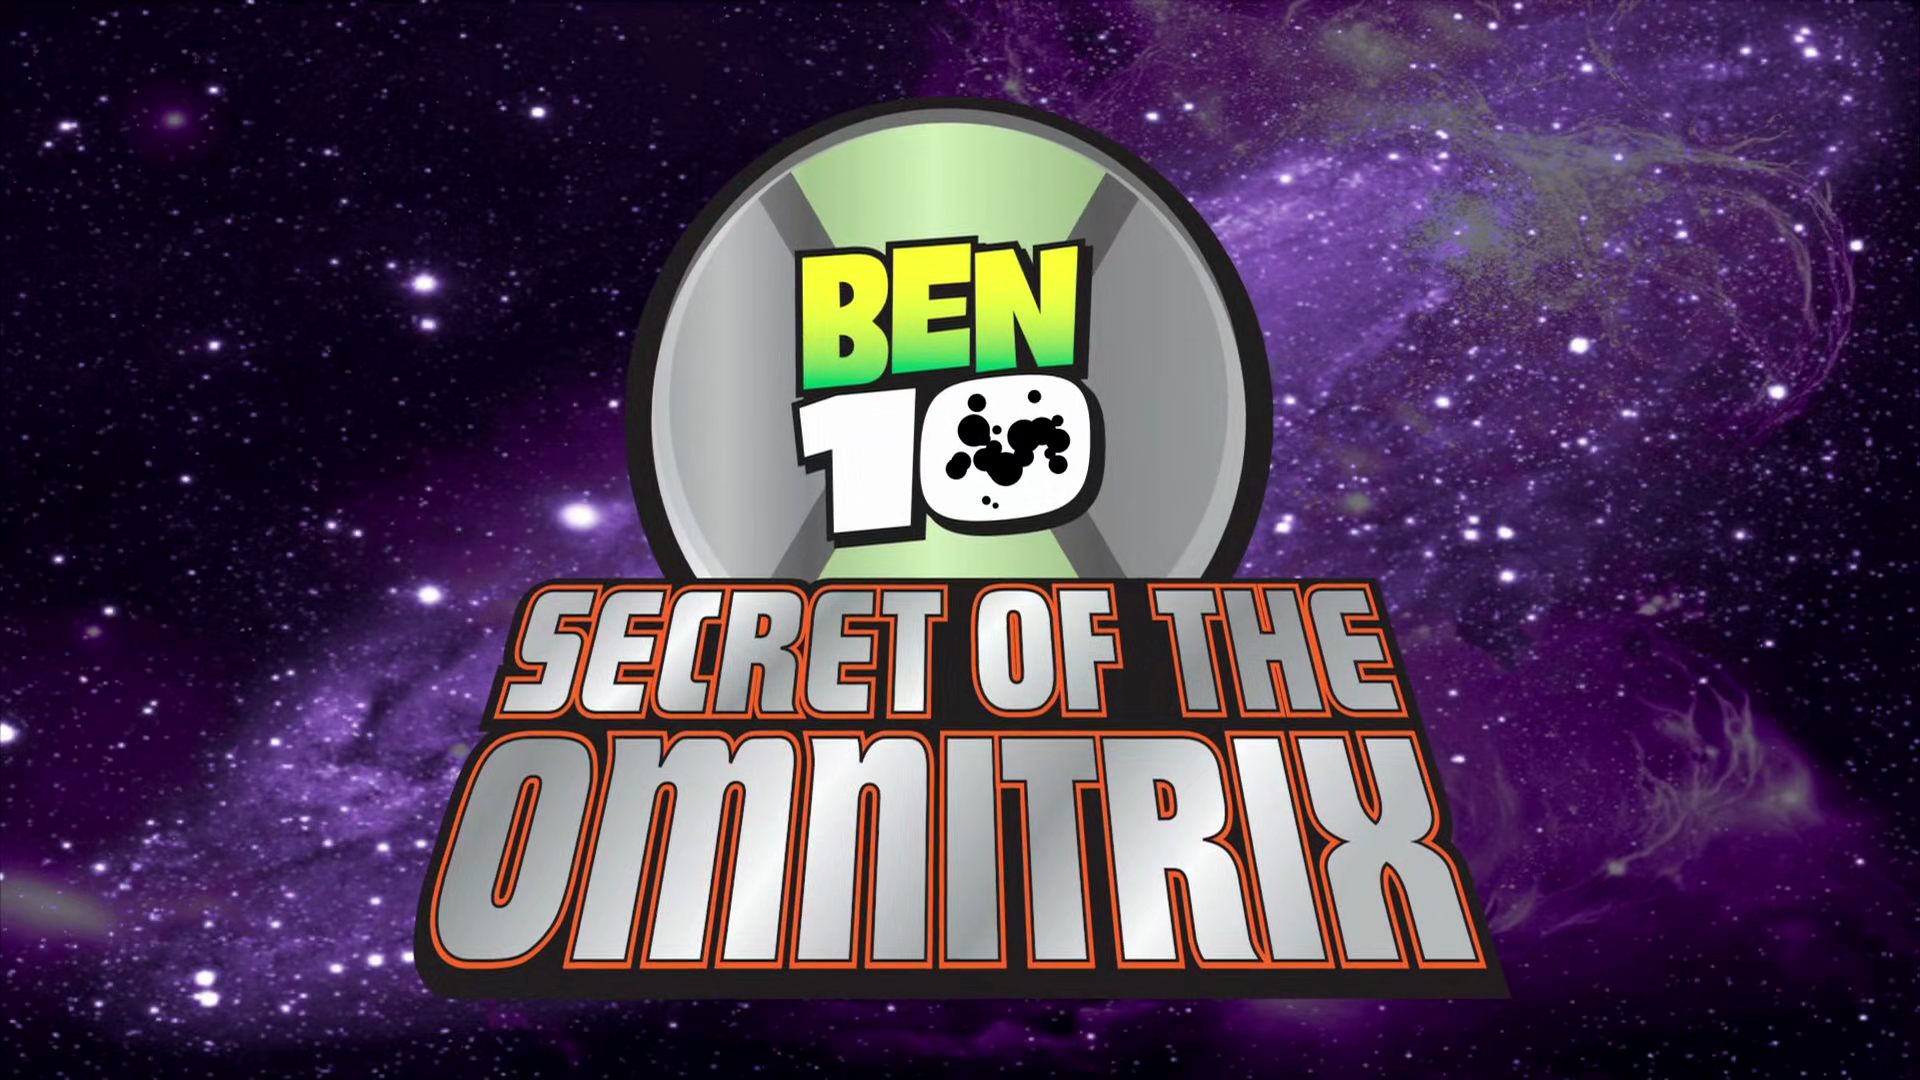 Omnitrix, Ben 10 Wiki